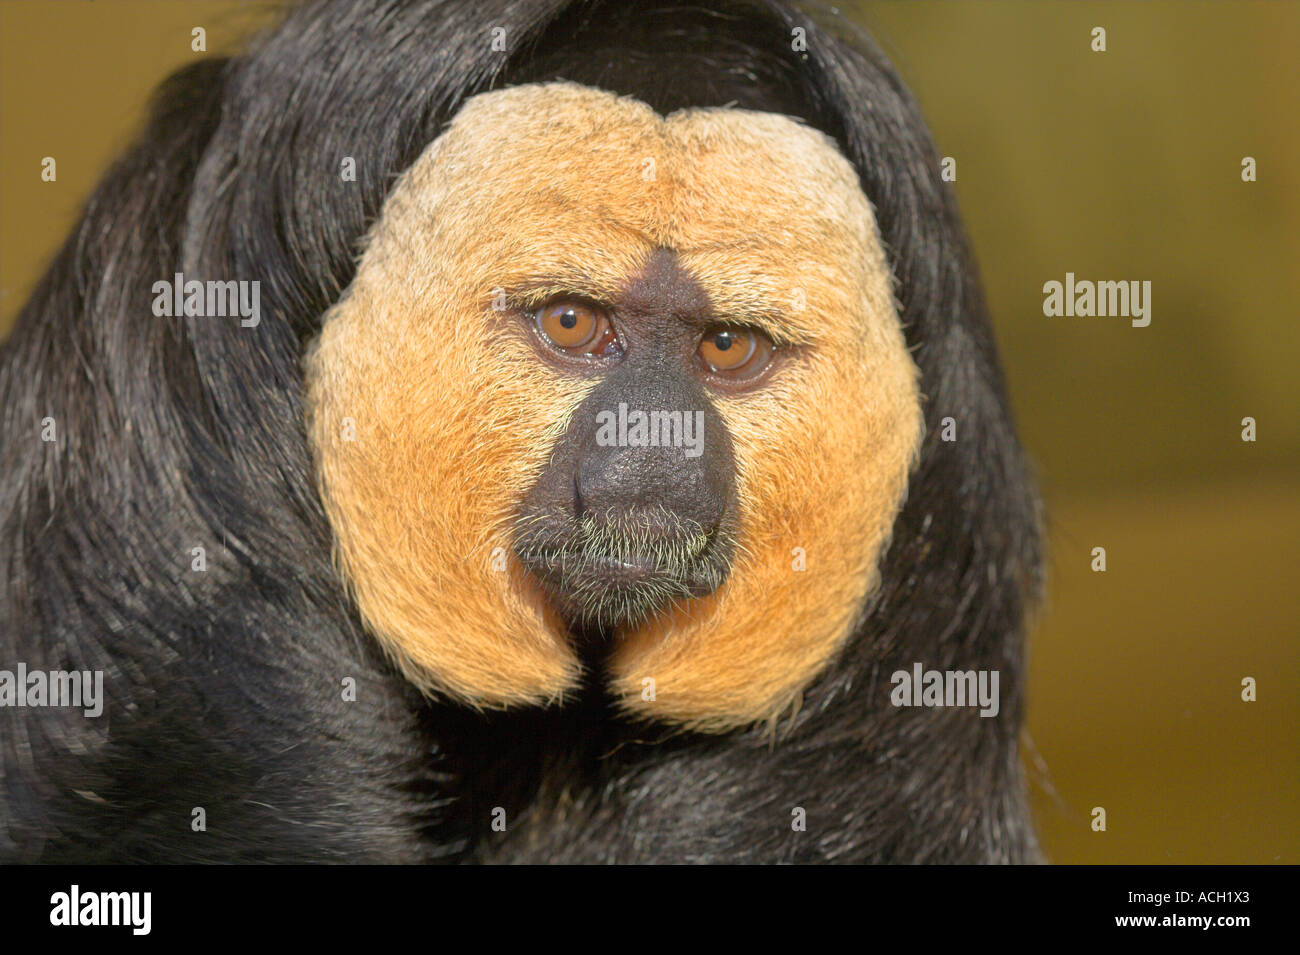 Saki white faced monkey from South America Stock Photo